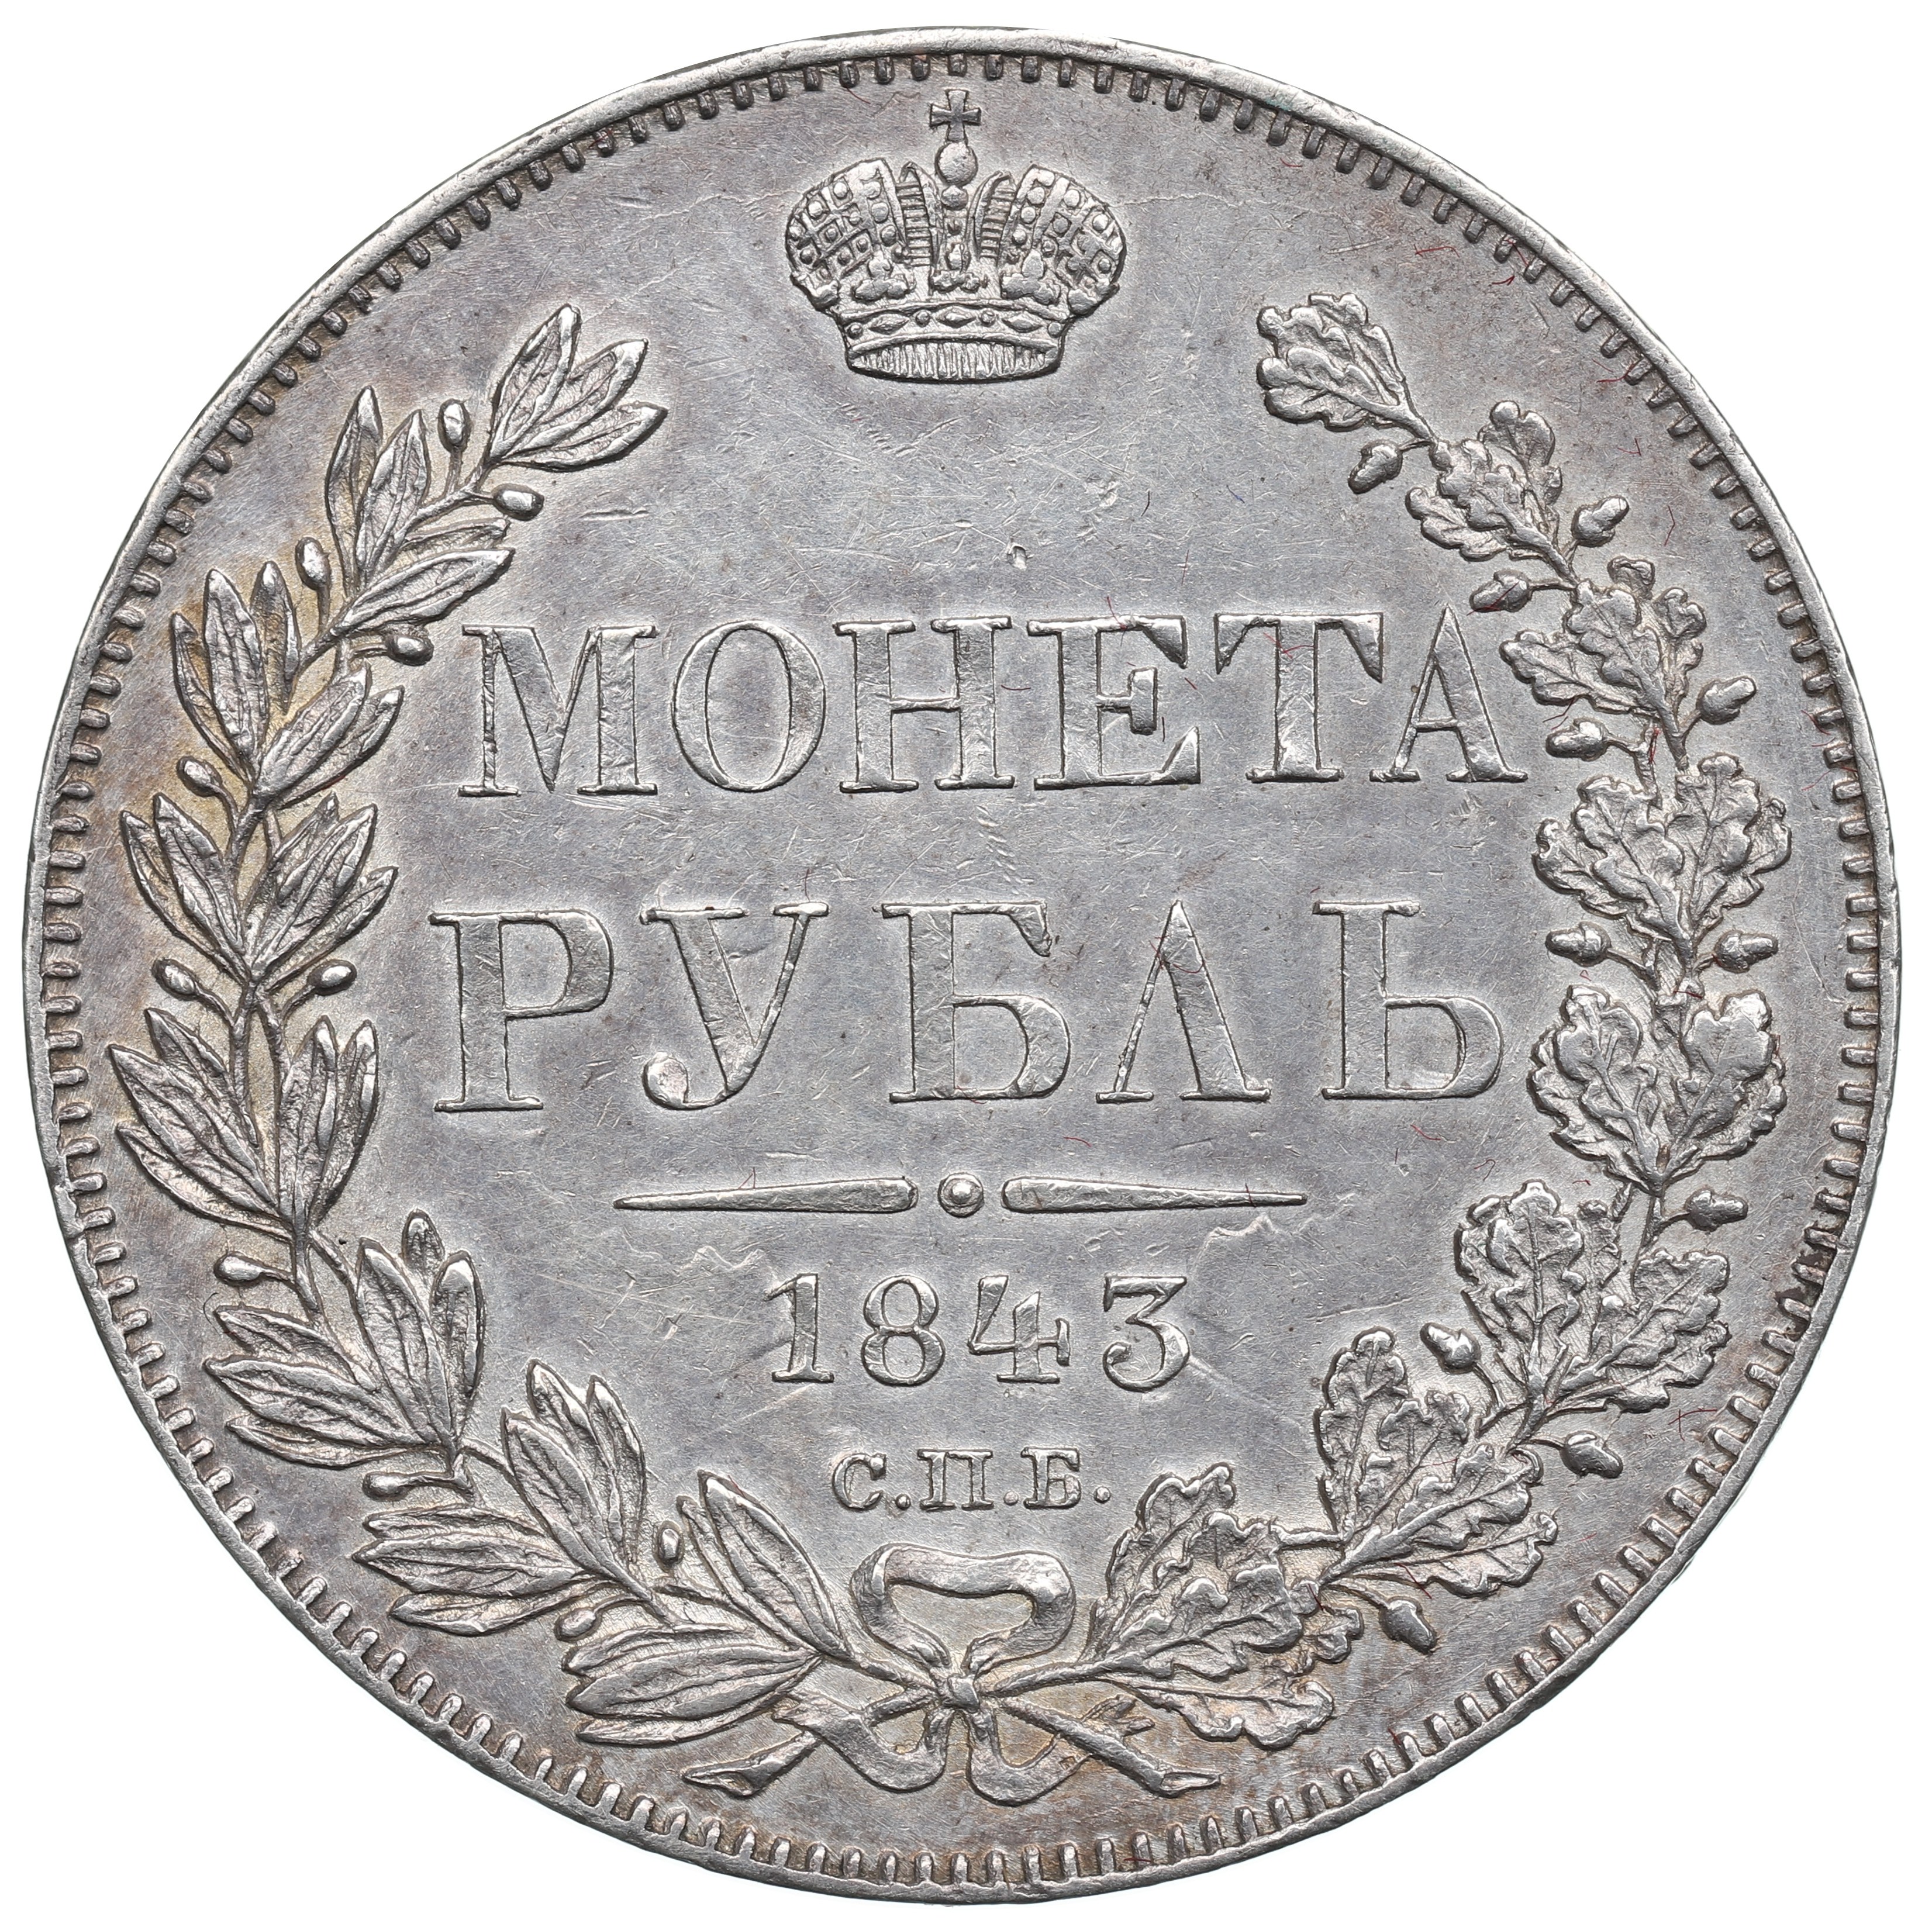 Купить за 19 рублей. Монеты 1880г. 1 Рубль 1837 года. Рубли 19 века. Монета полтина.